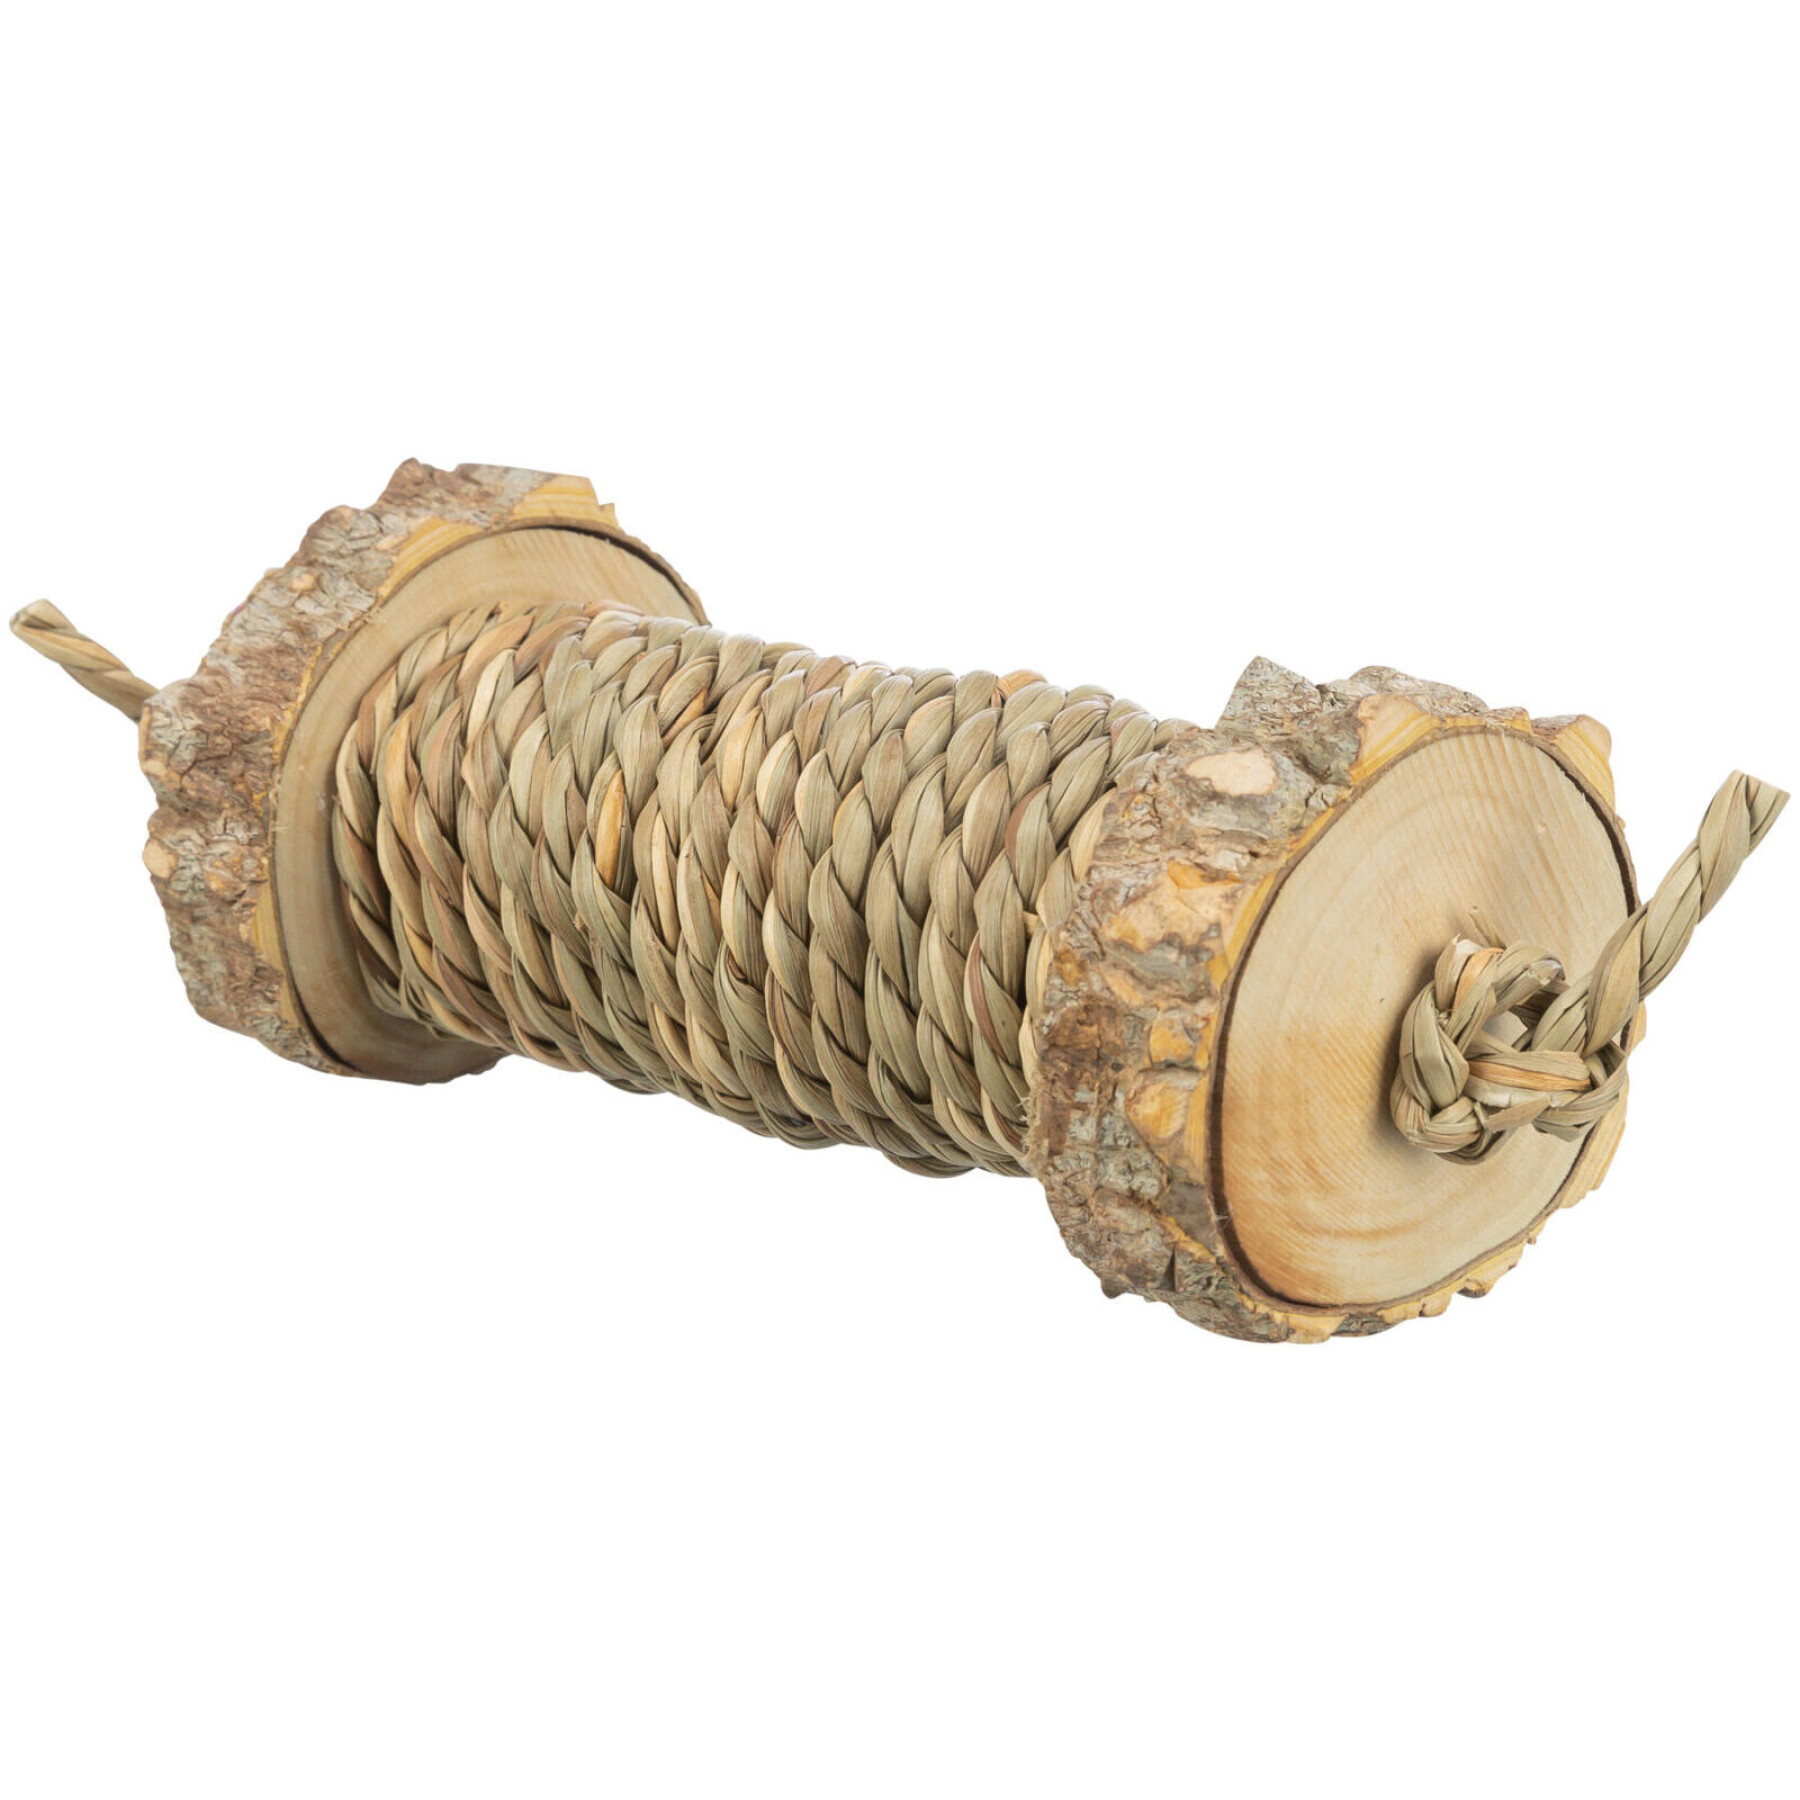 Nagerspielzeug Rolle mit Algen - aus Holz Trixie (x4)